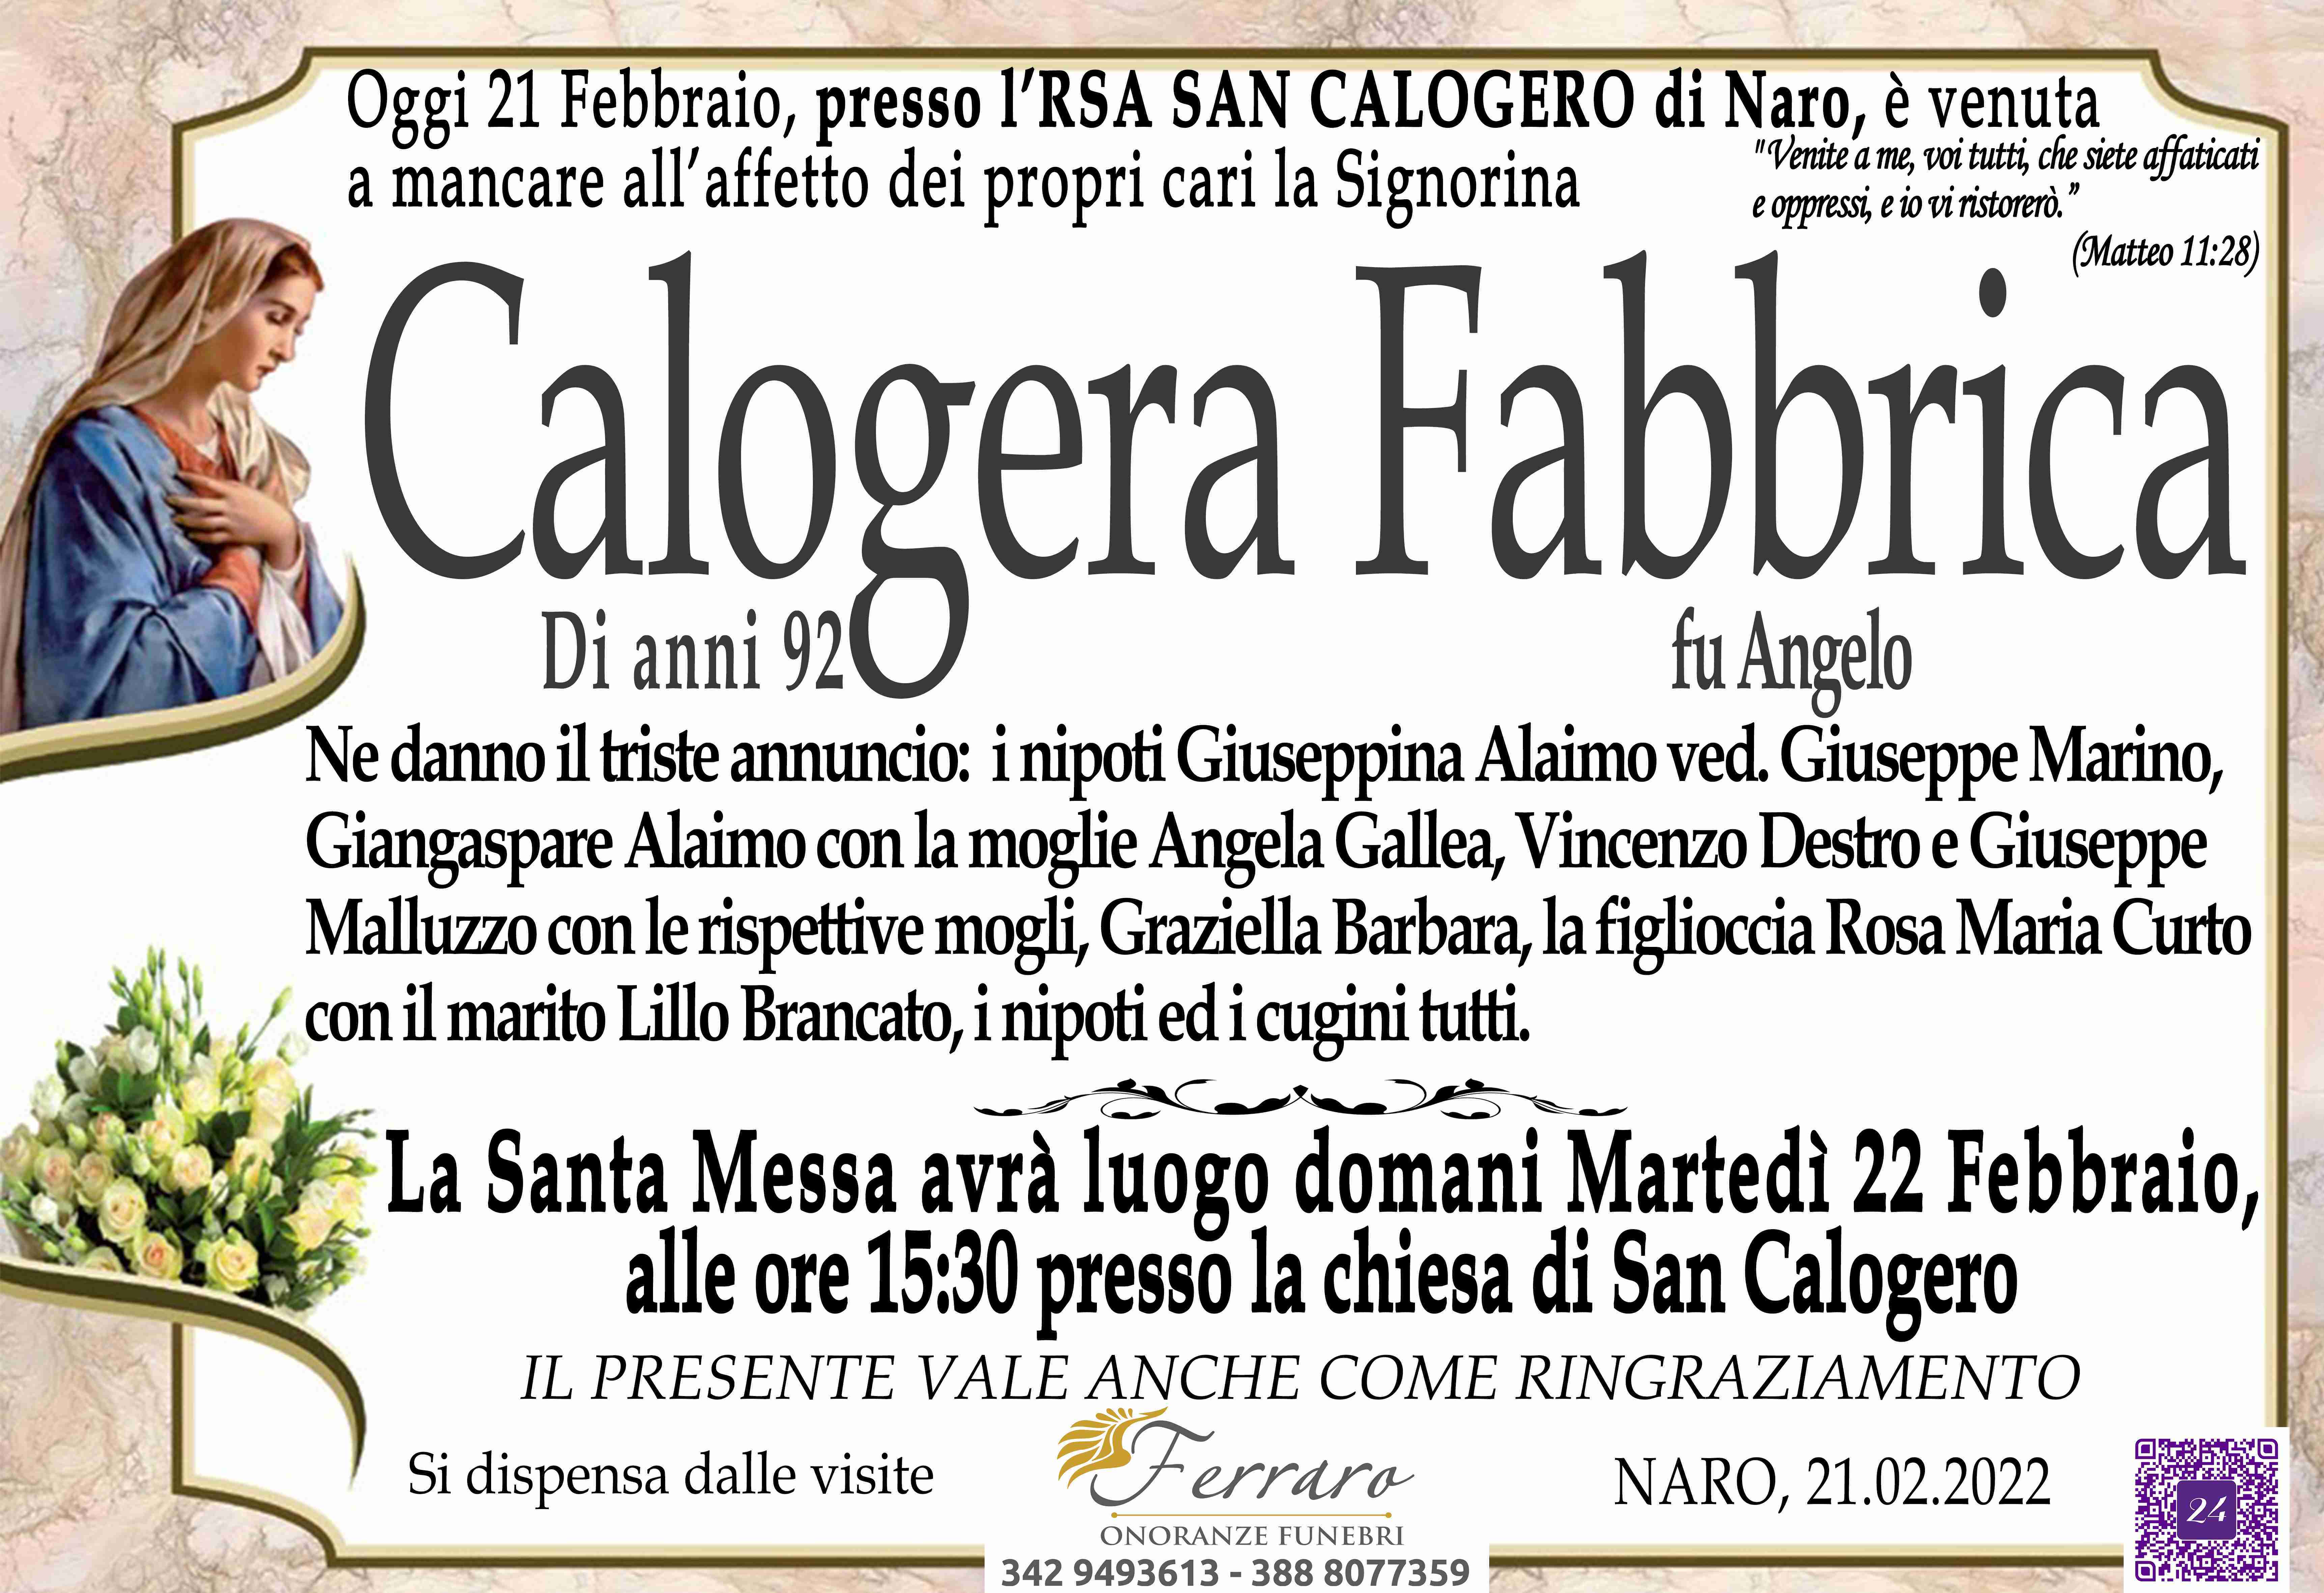 Calogera Fabbrica